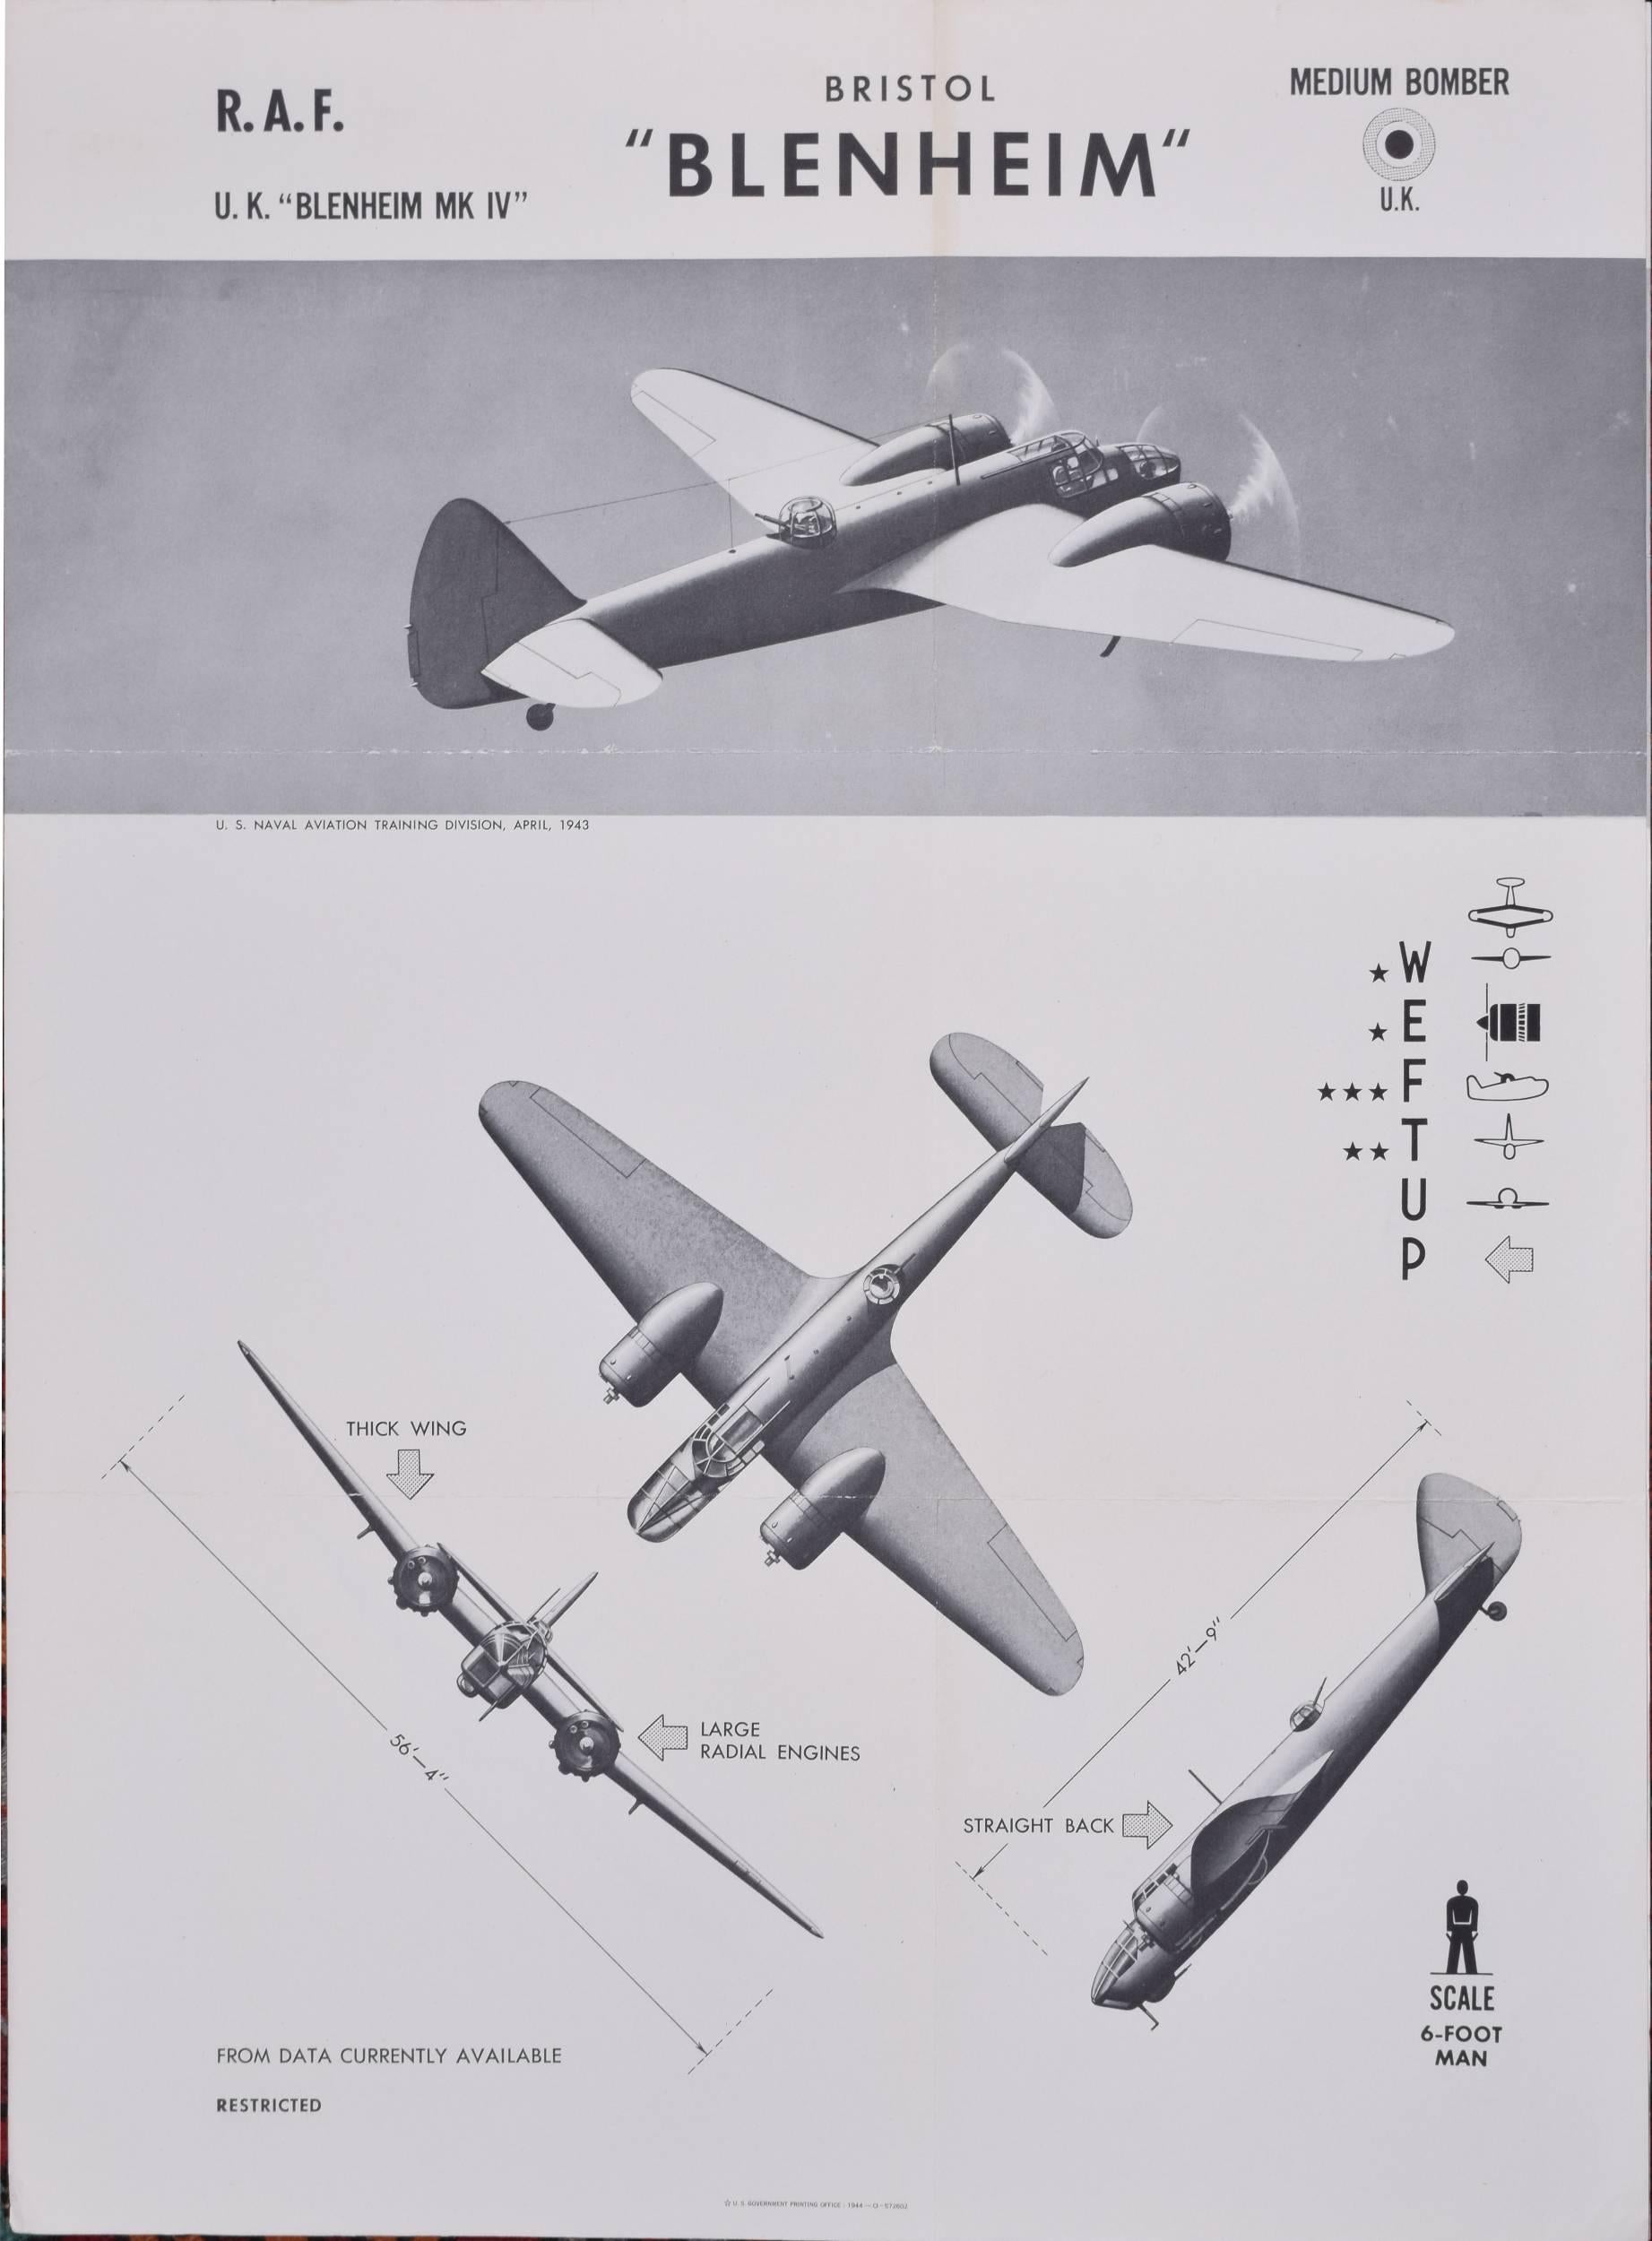 Print Unknown - Affiche de la Royal Air Force Bristol Blenheim de 1943 de la division d'entraînement de l'aviation navale des États-Unis